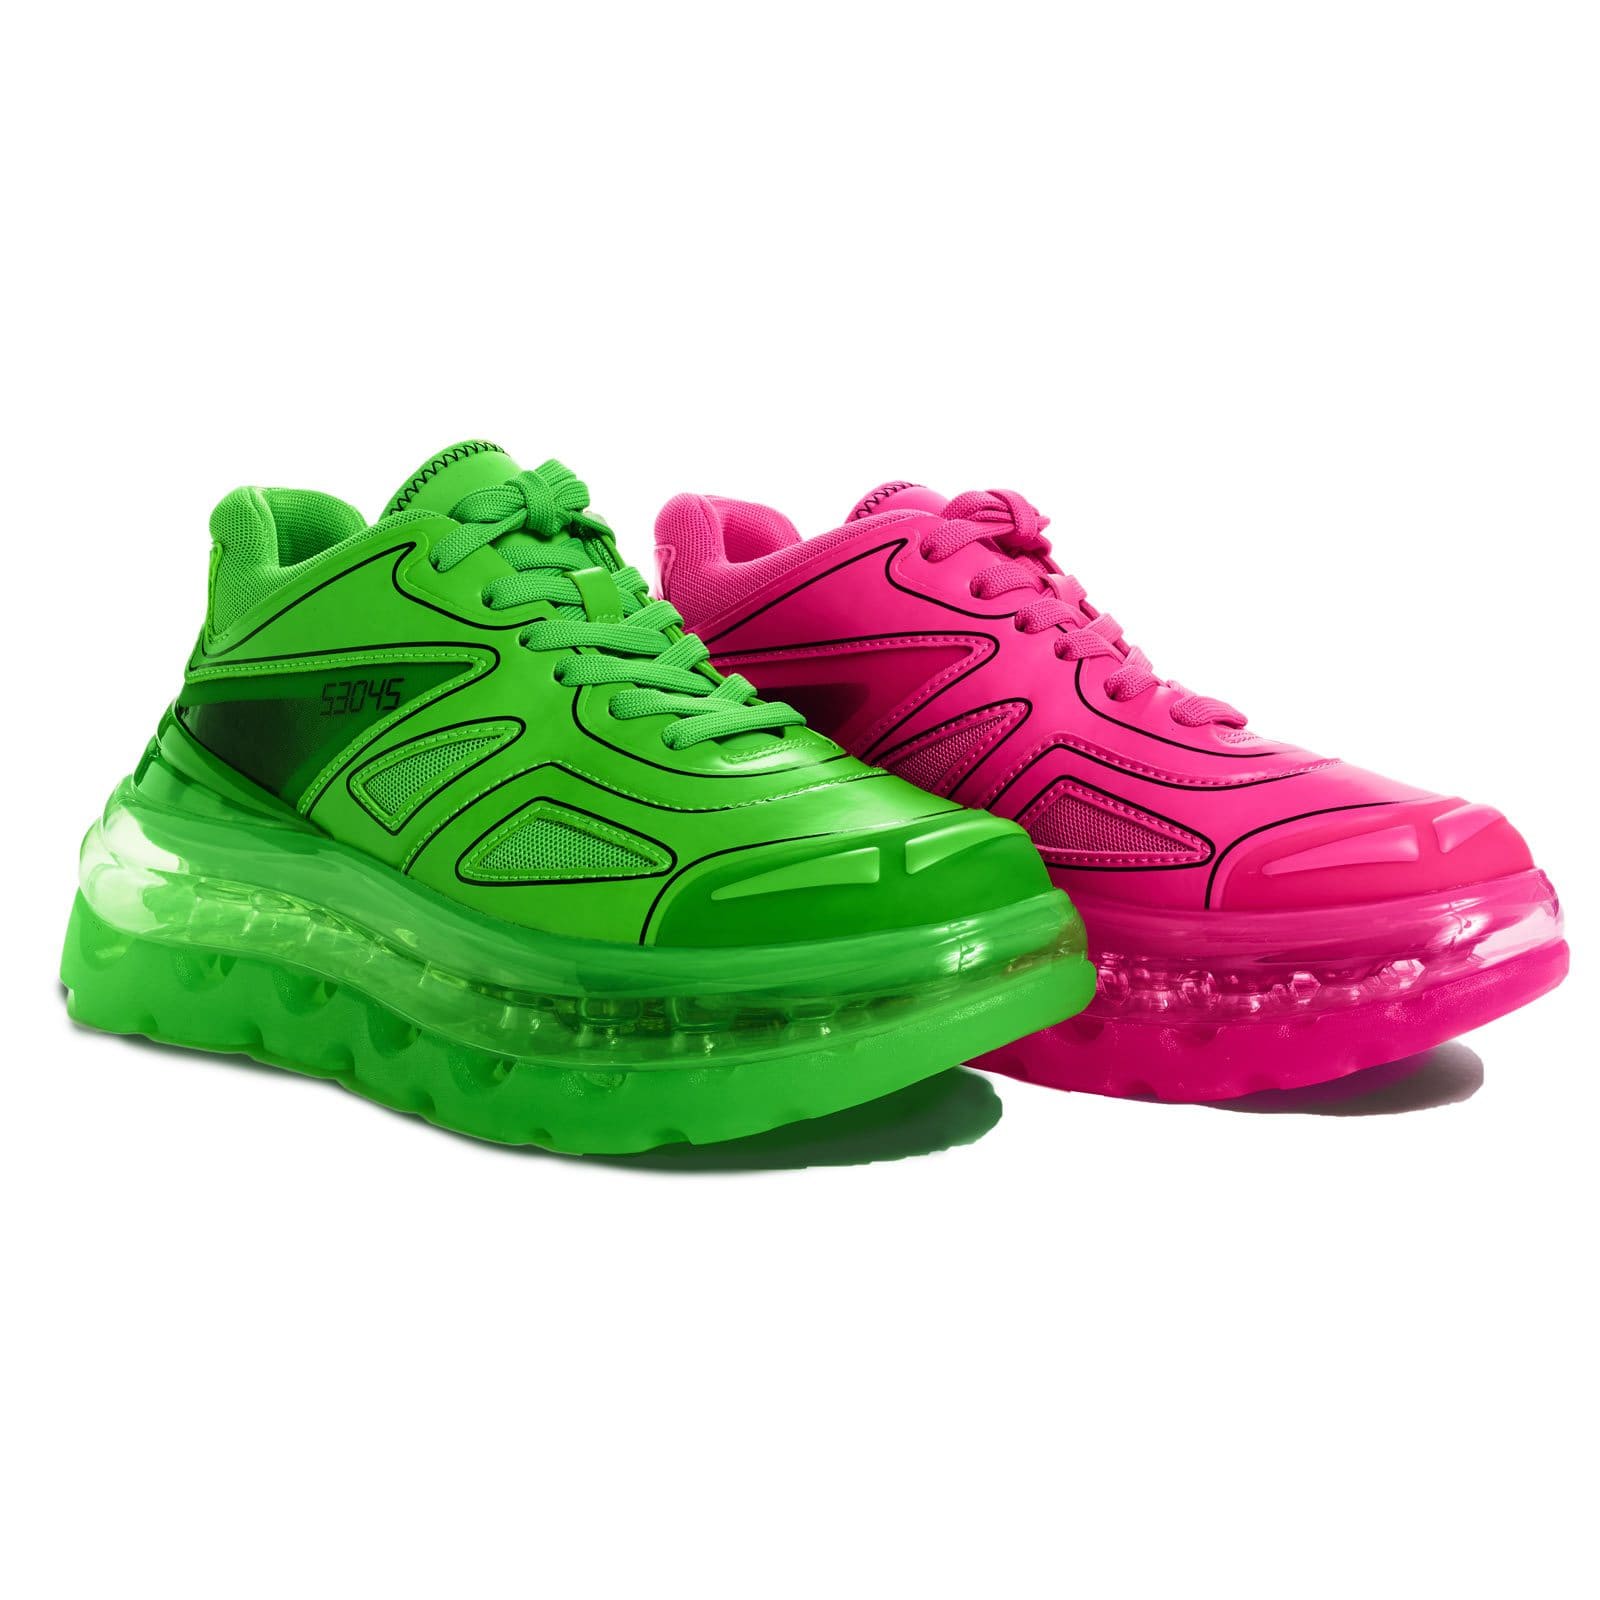 neon sneakers